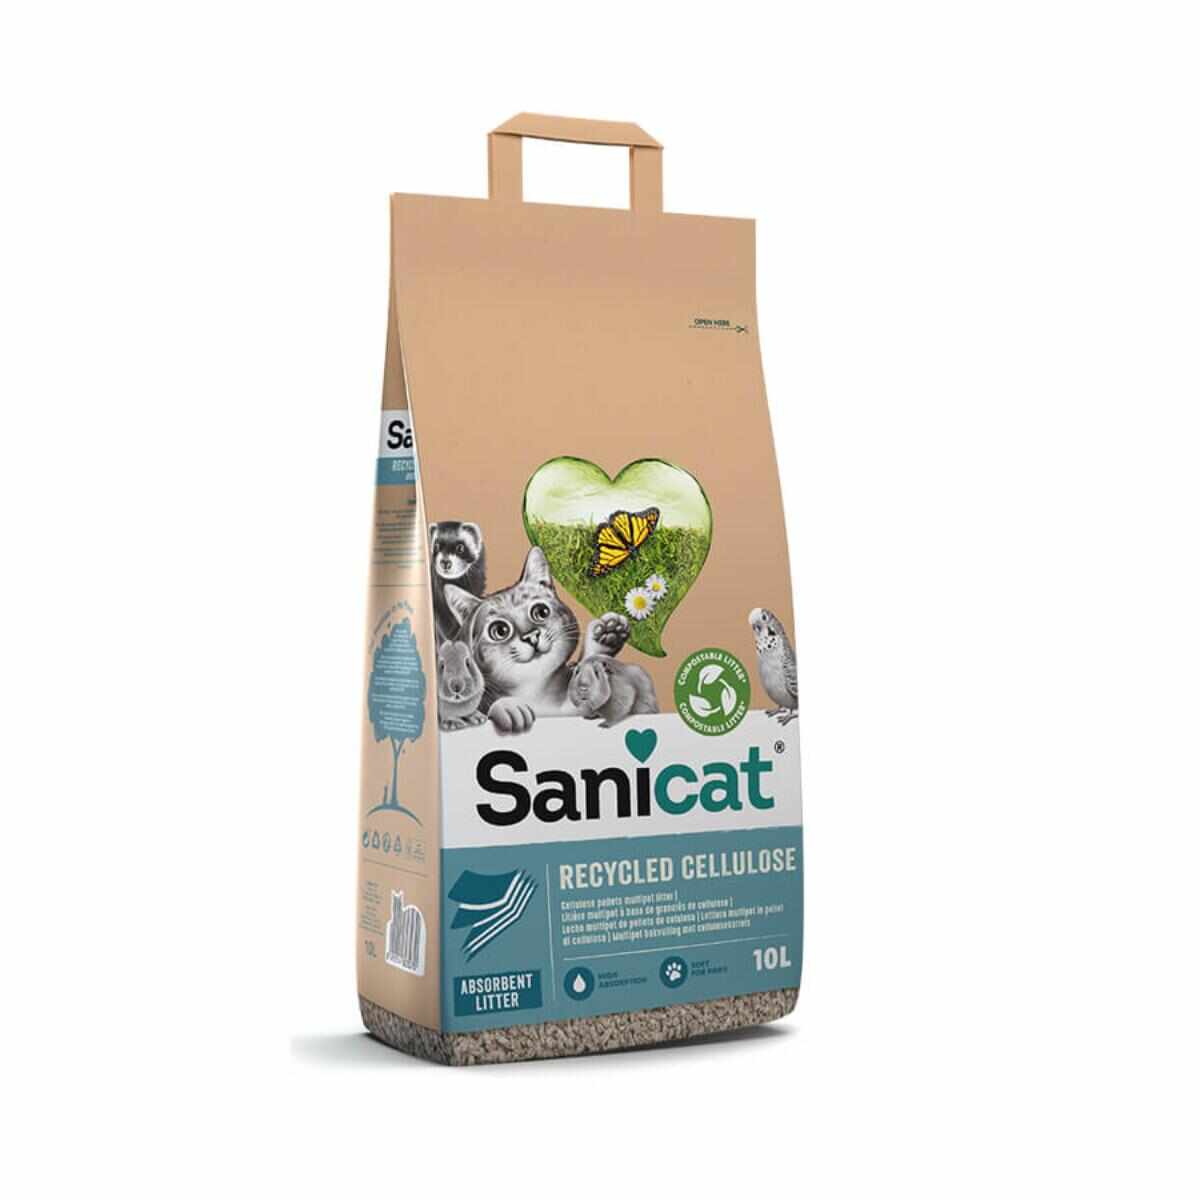 SANICAT Recycled Cellulose, neparfumat, așternut igienic pisici, peleți, celuloza, neaglomerant, ecologic, biodegradabil, 10l